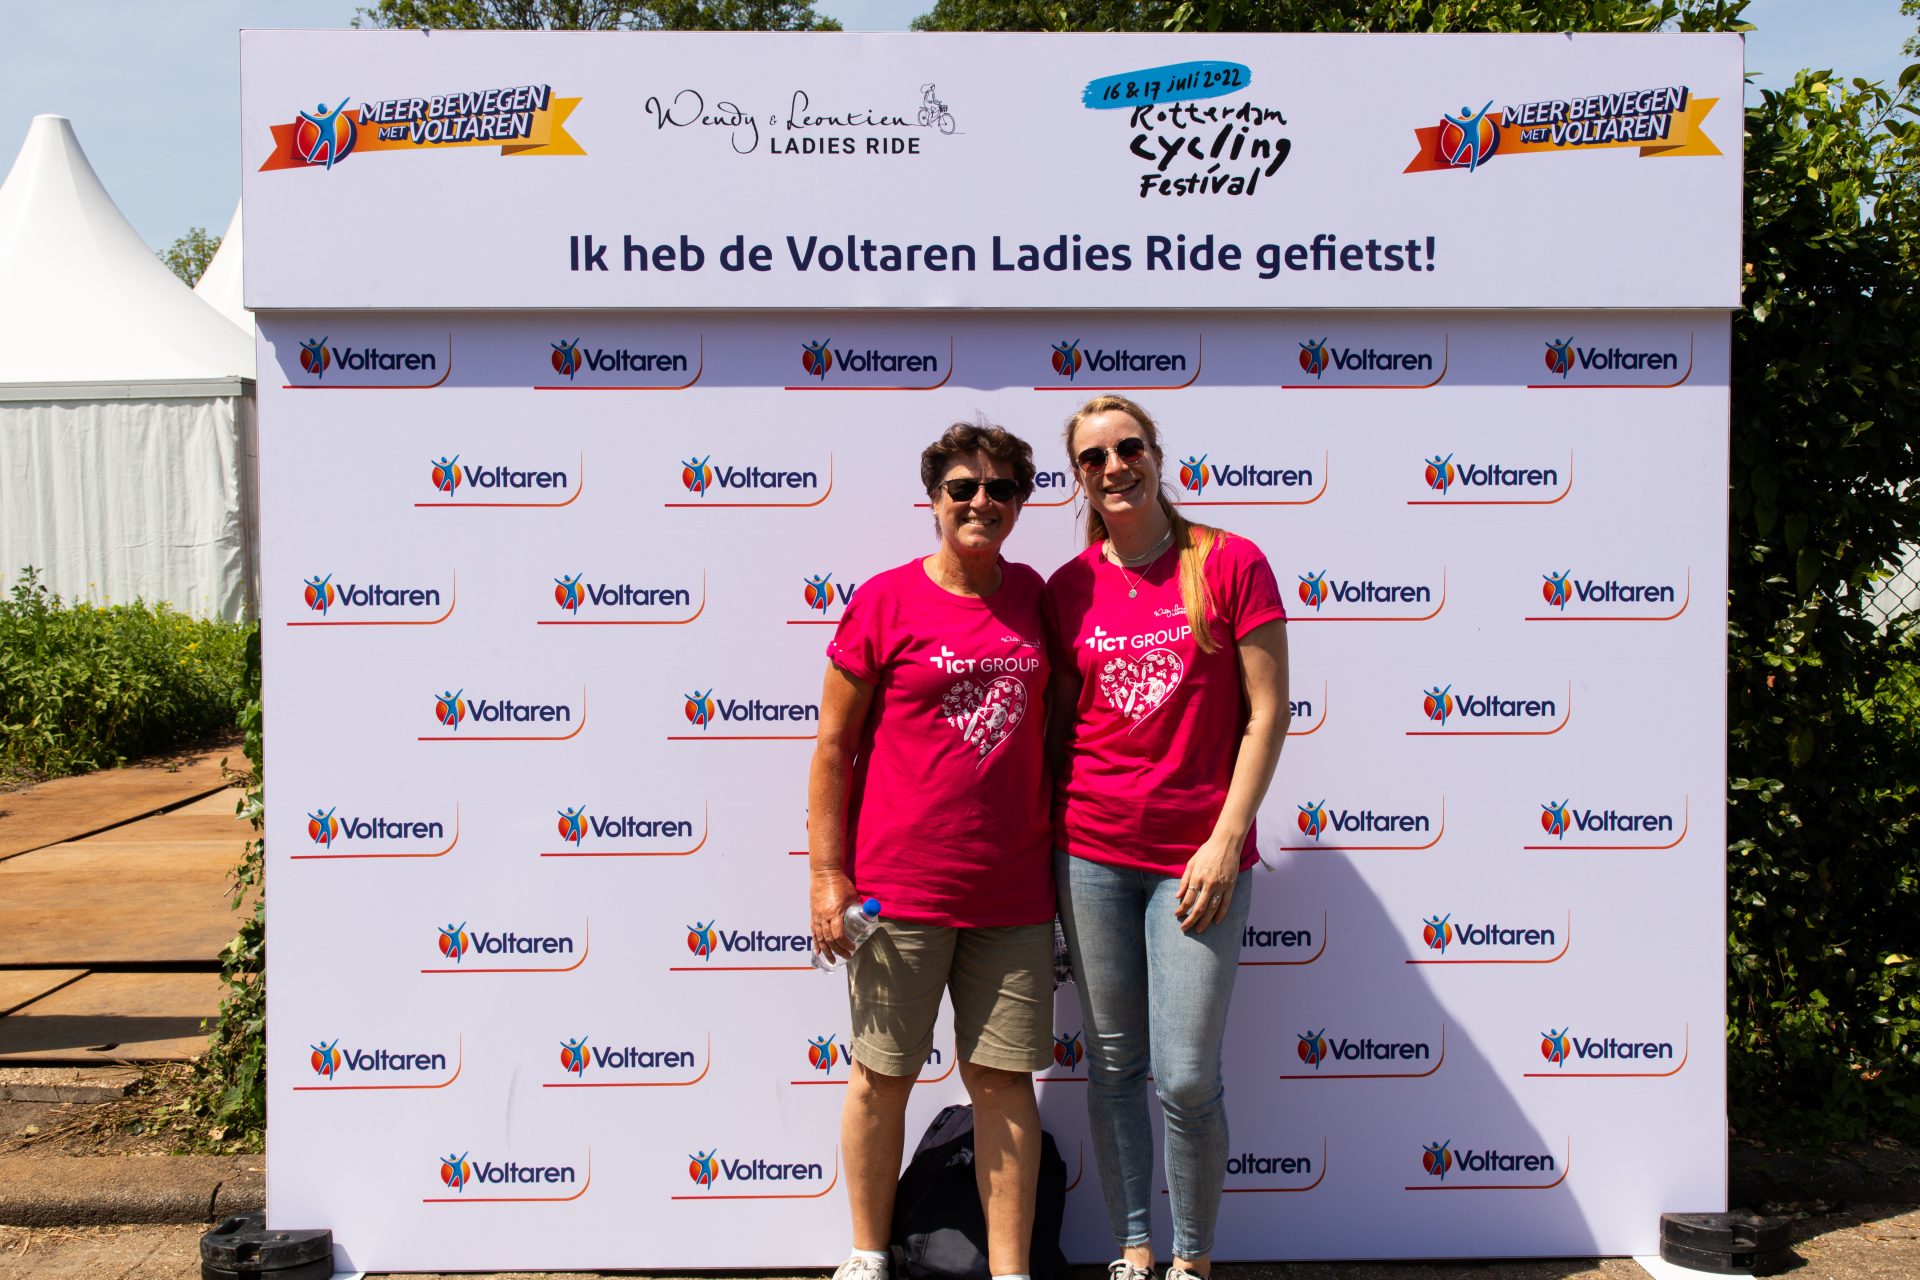 LADIES RIDE VOLTAREN BACKGROUND PHOTOS 54 of 64 Ladies Ride 2022